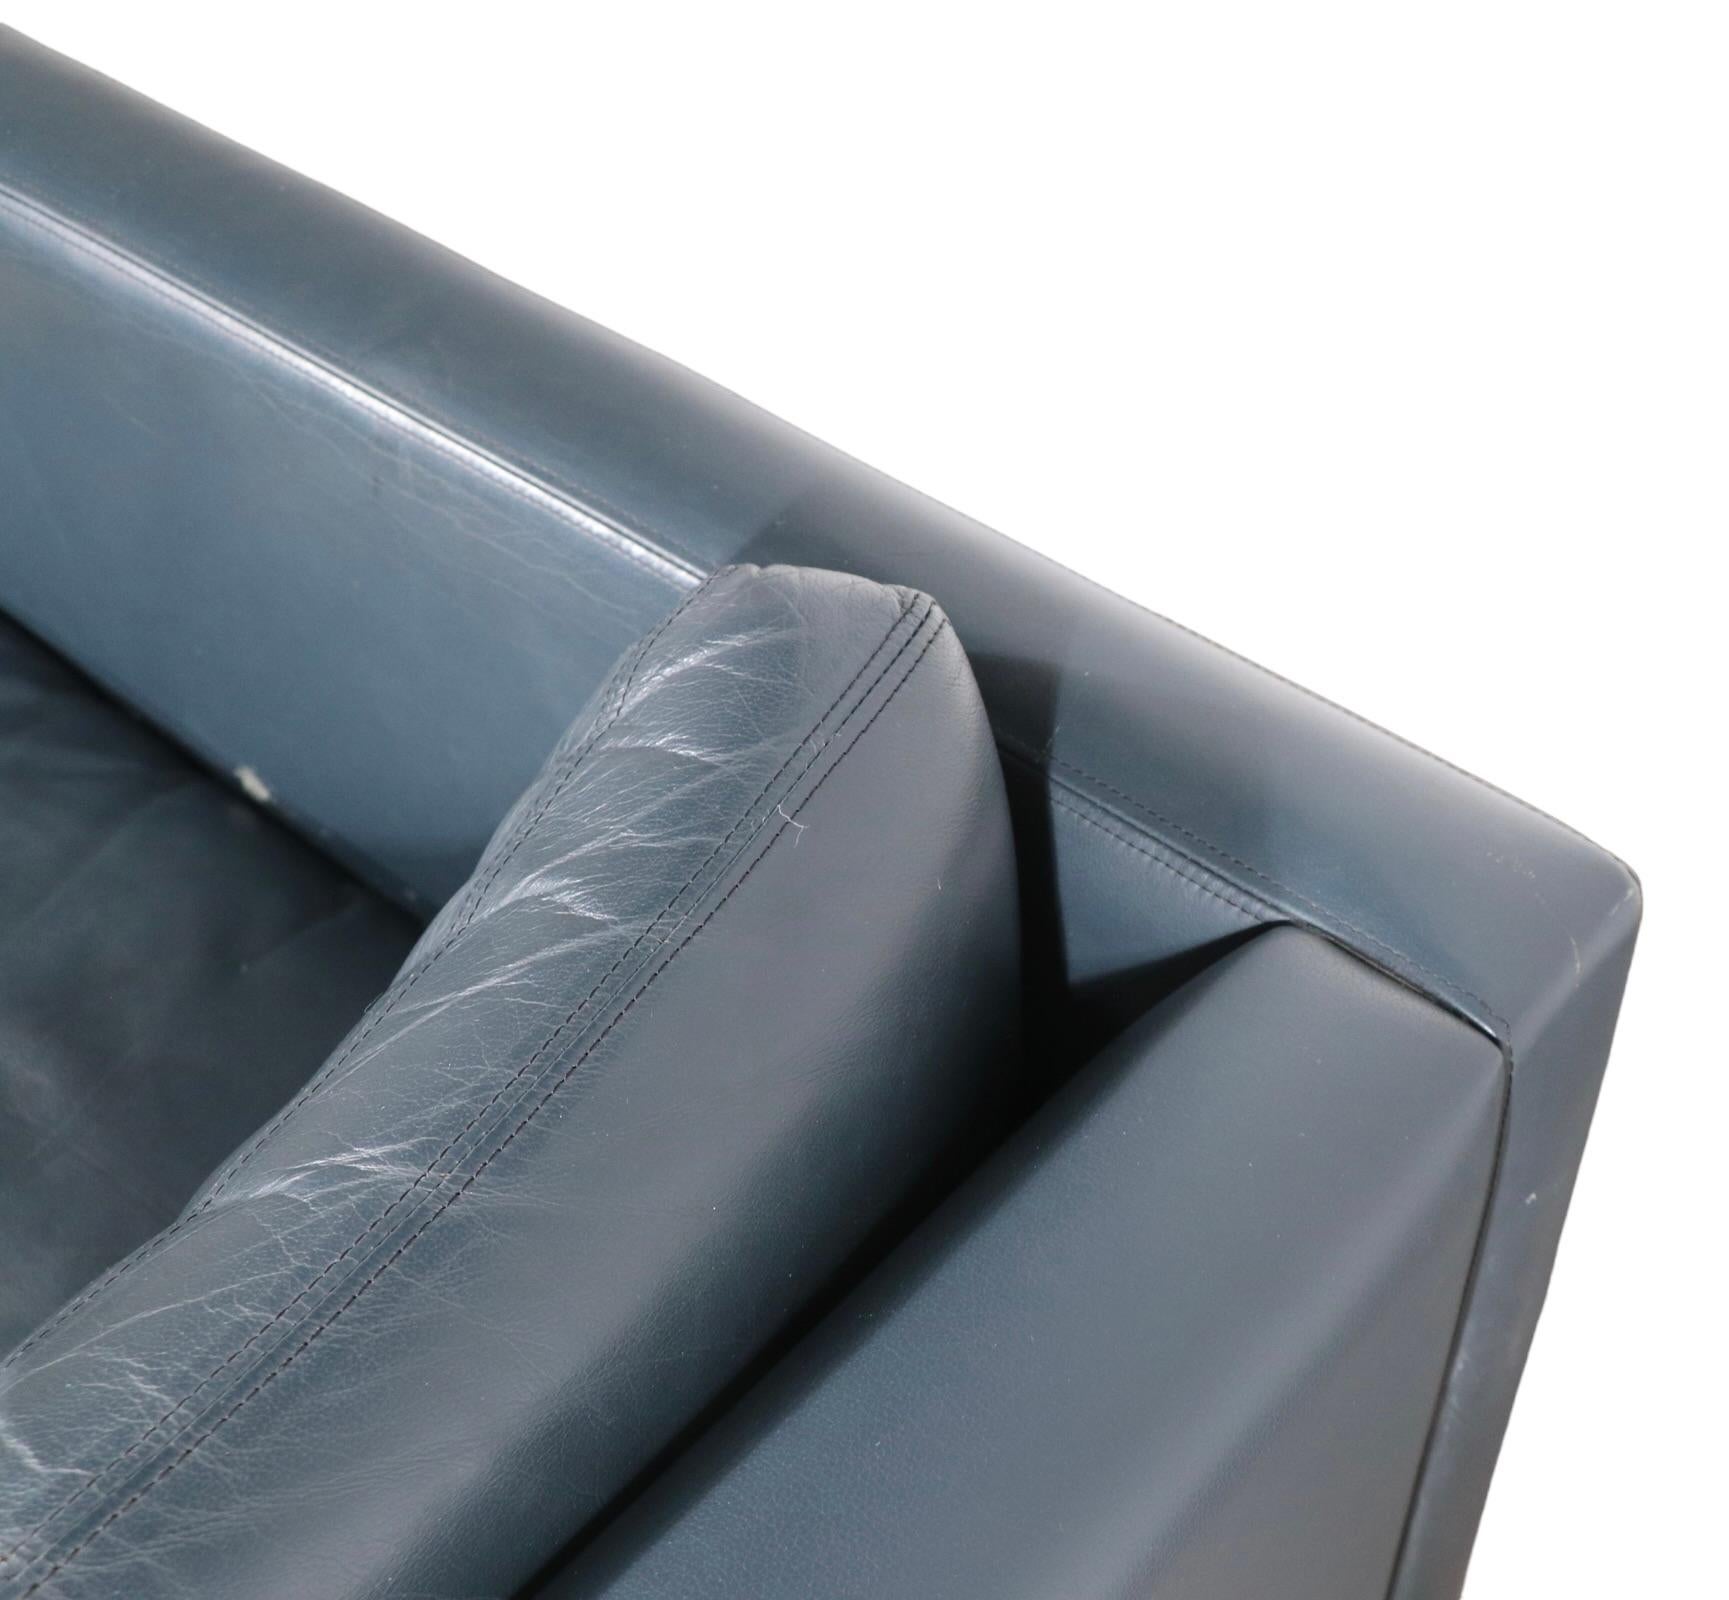 Canapé-lit chic, sophistiqué et vogueur, conçu par Charles Pfister pour Knoll. Cet exemplaire a été exécuté en cuir bleu grisâtre, il est en bon état d'origine, présentant une légère usure cosmétique, normale et conforme à l'âge. En particulier, le